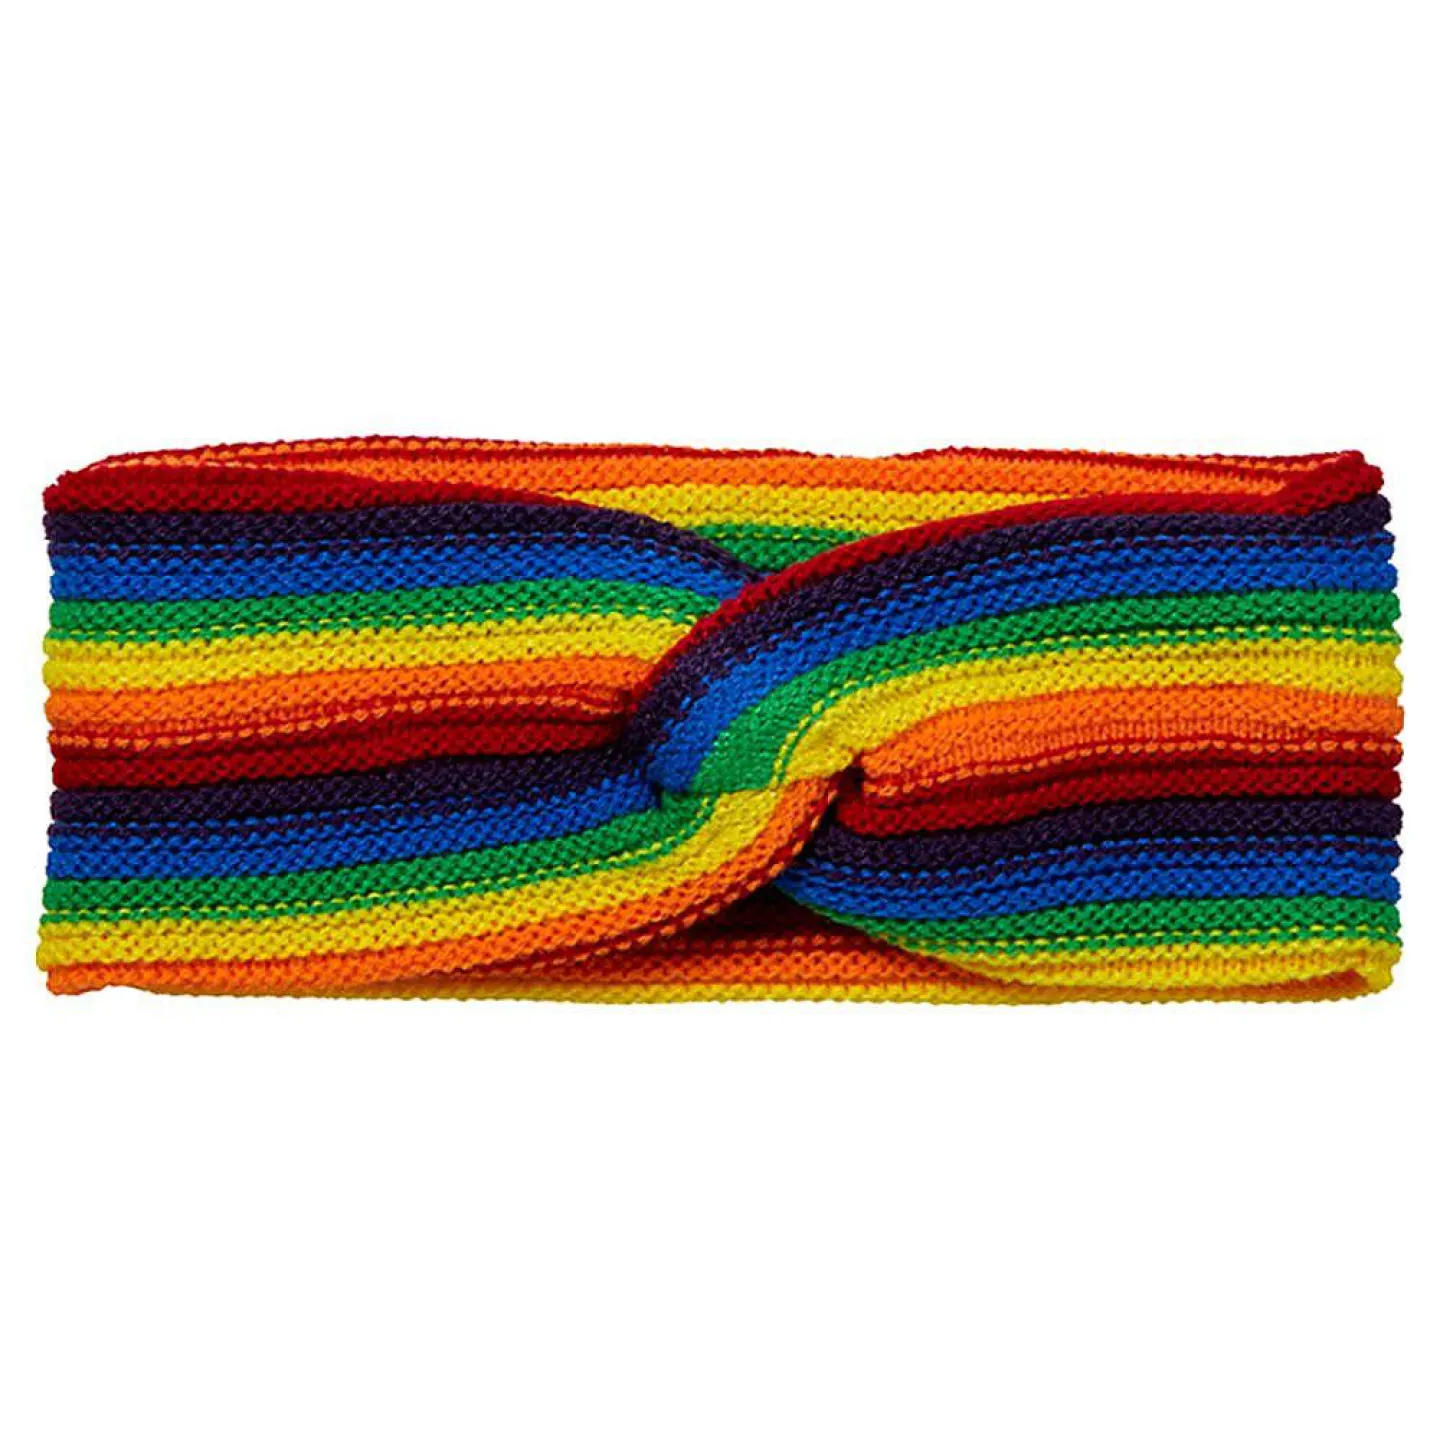 gebreide haarband regenboog kopen.